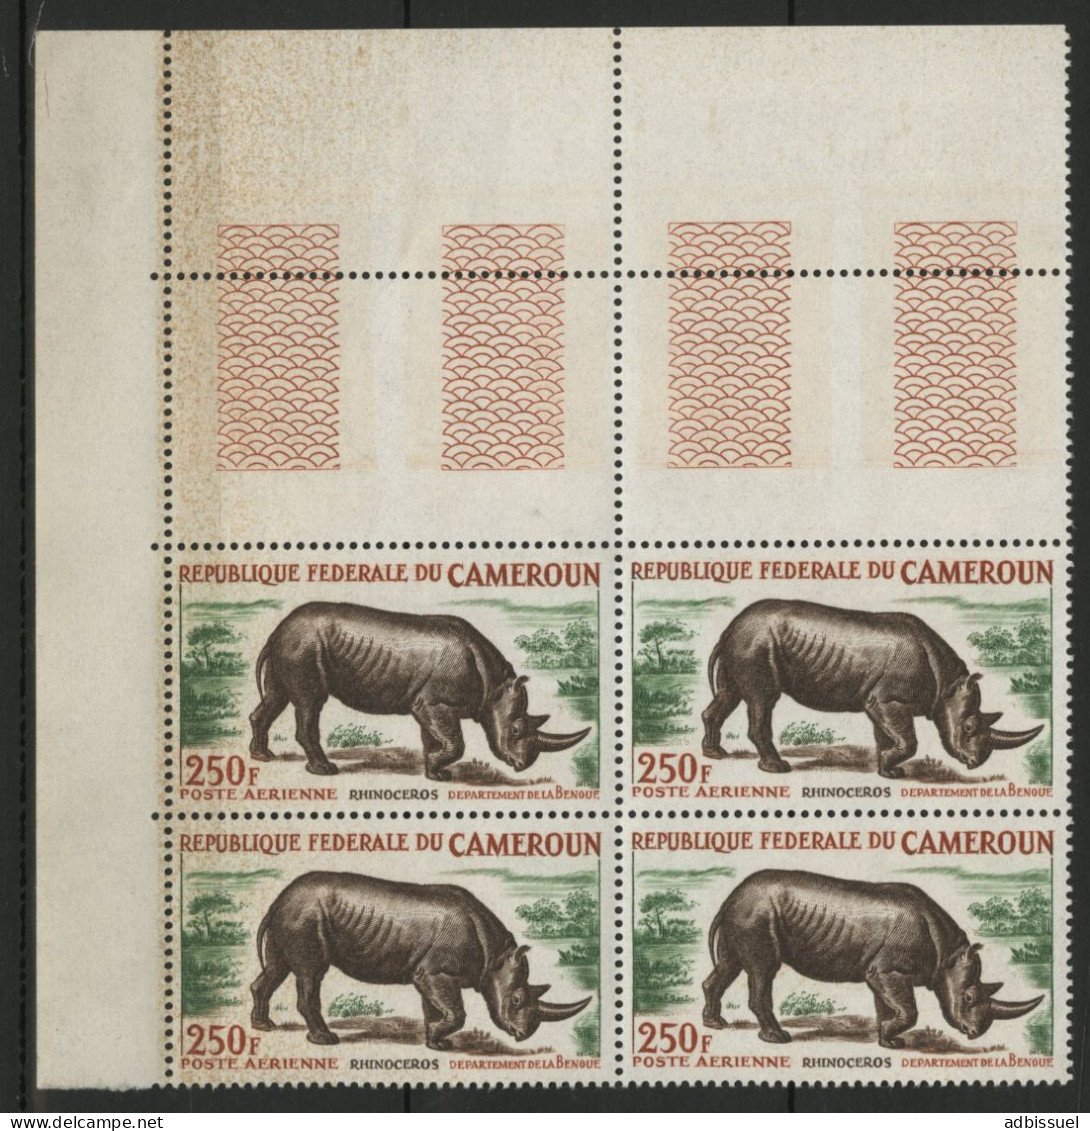 CAMEROUN POSTE AERIENNE PA N° 55A Neufs ** (MNH) Bloc De Quatre "Rhinocéros" Voir Description - Camerun (1960-...)